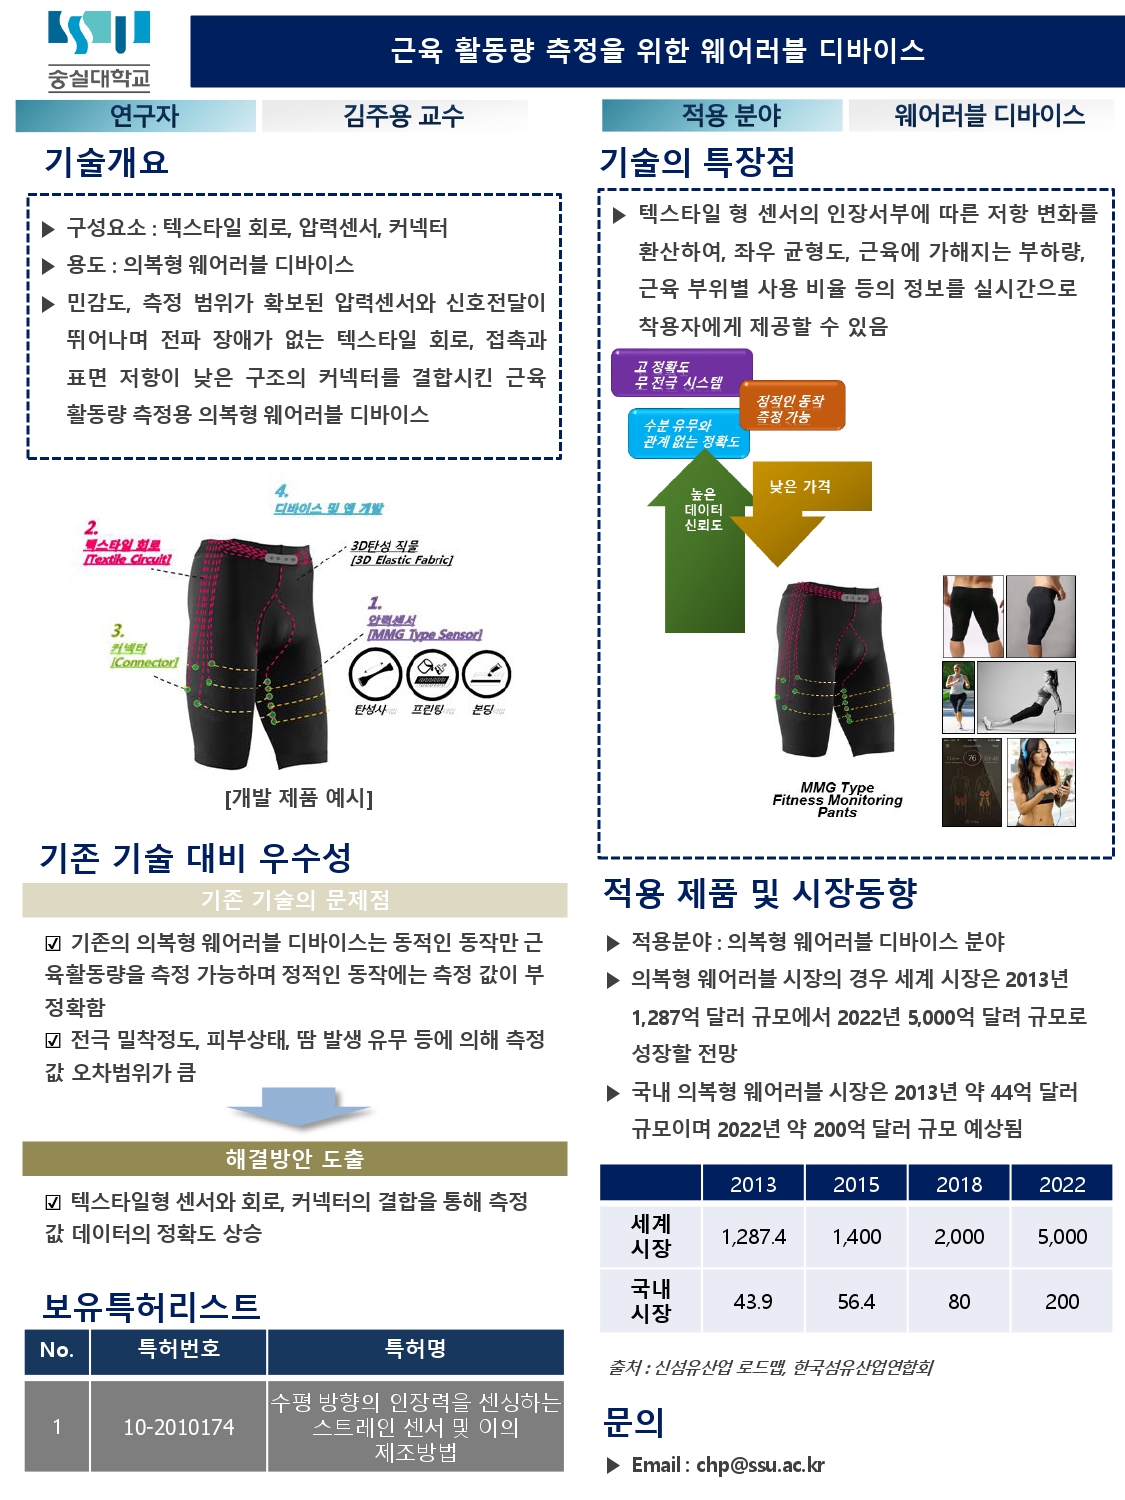 16_숭실대학교_근육 활동량 측정을 위한 웨어러블 디바이스_page-0001.jpg